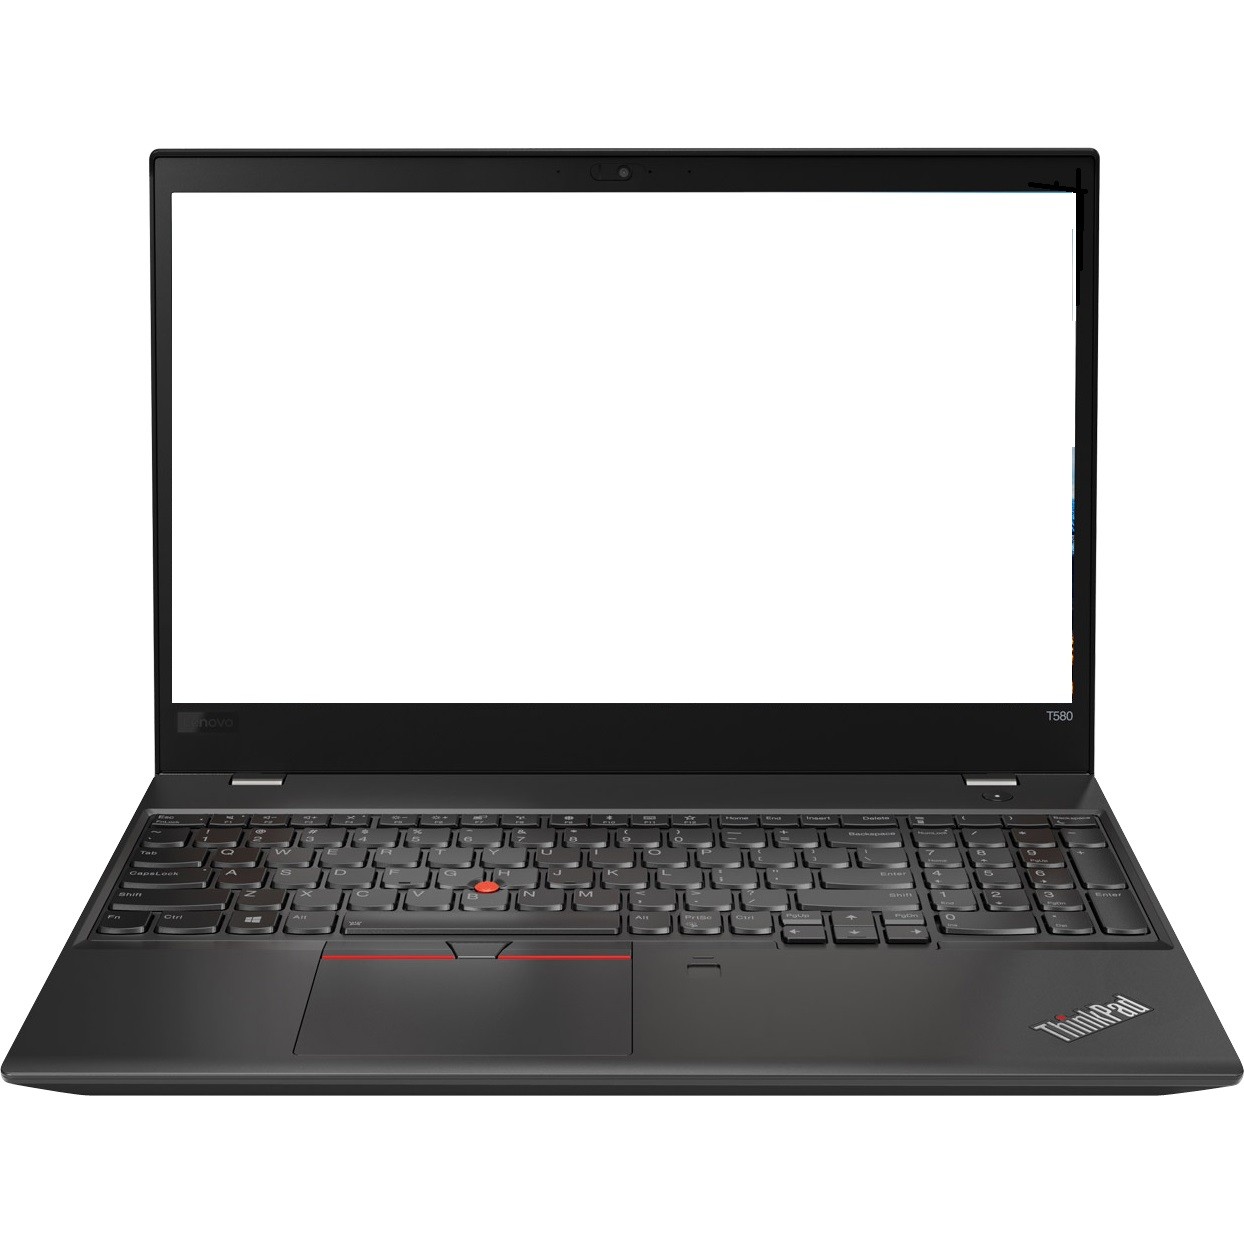 Lenovo ThinkPad T580 15.6" FHD i5-8350U 1.7GHz 4GB 500GB HDD W10P Laptop R